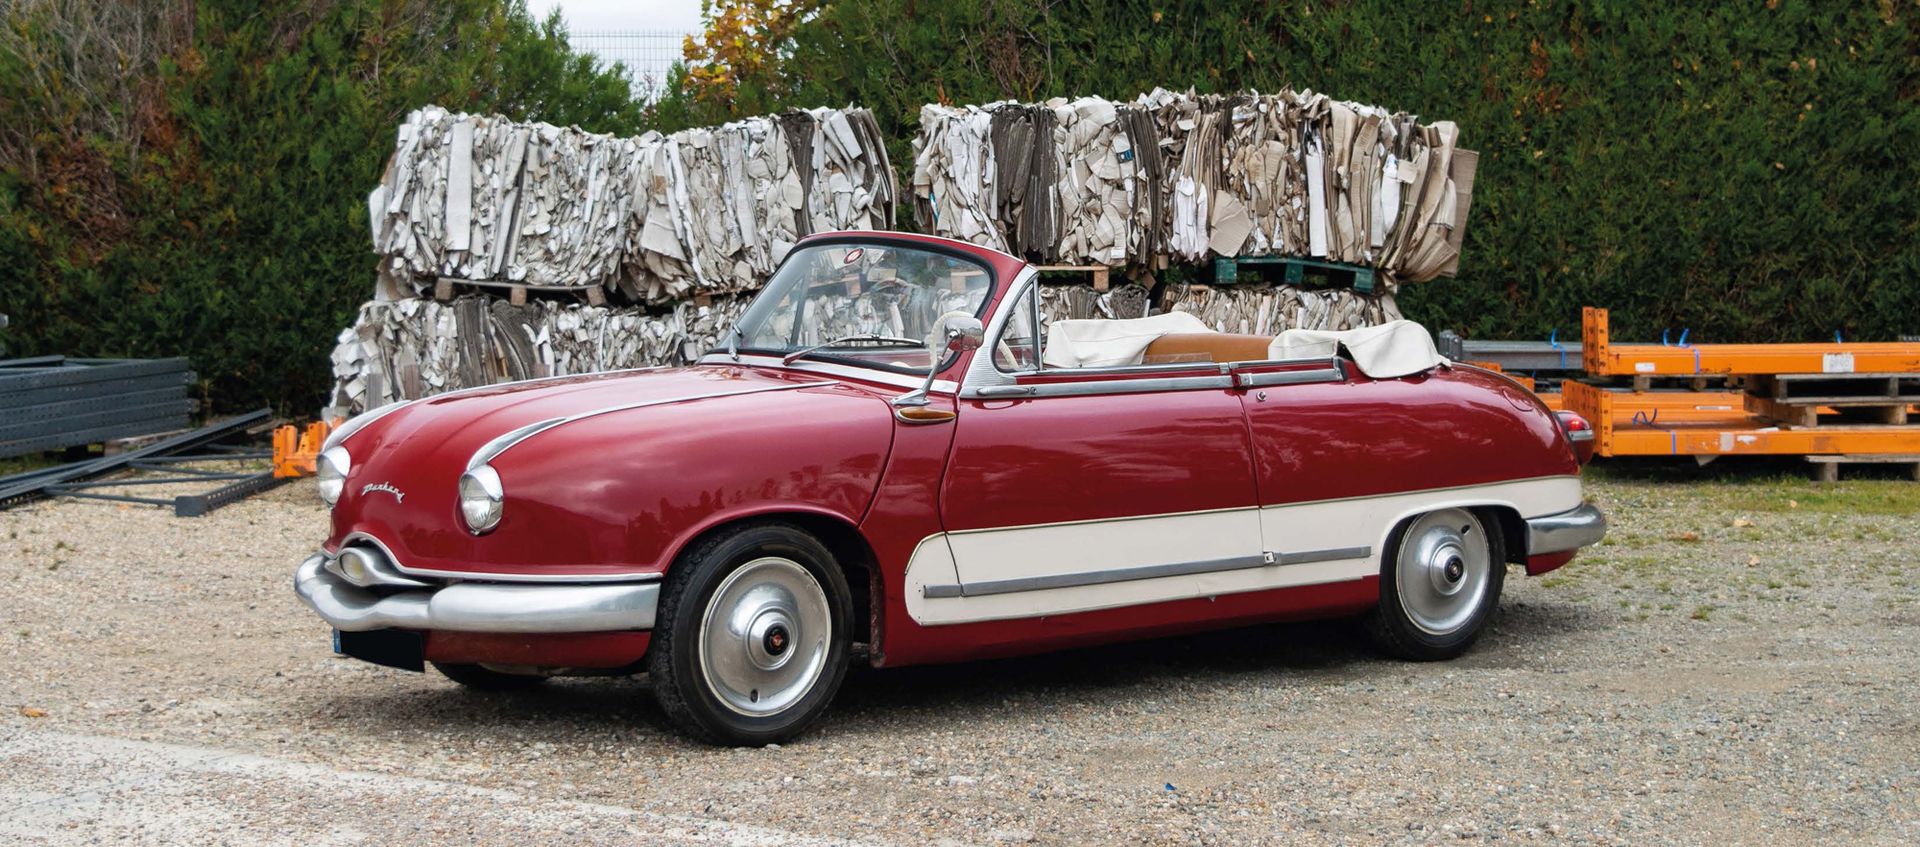 1959 PANHARD Dyna Z17 Cabriolet 
Extrem seltener Z17 Tiger

Bewährte und leistun&hellip;